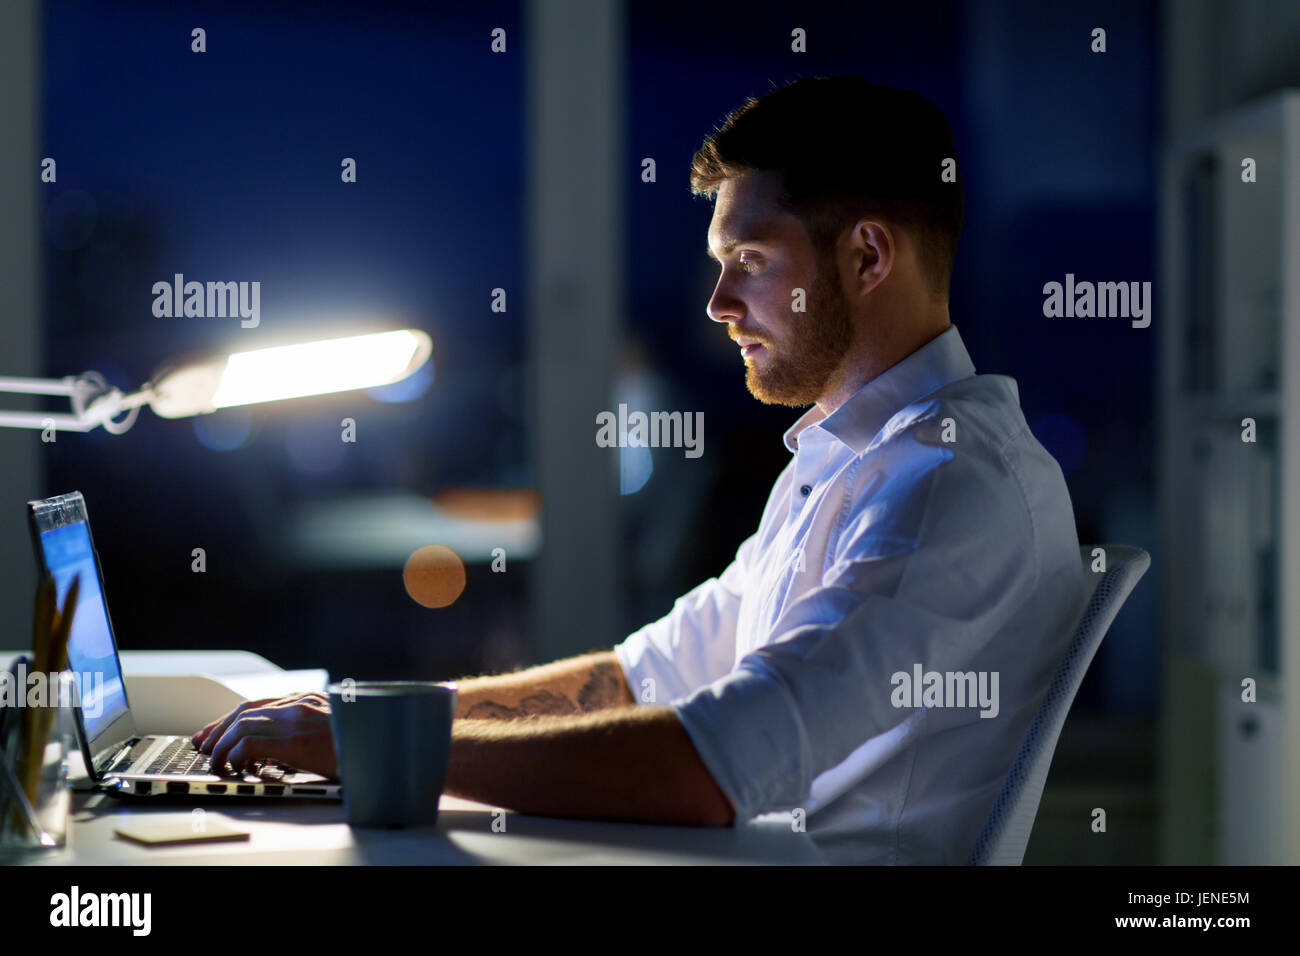 Mann mit Laptop und arbeiten bei Nachtgottesdienst Kaffee Stockfoto